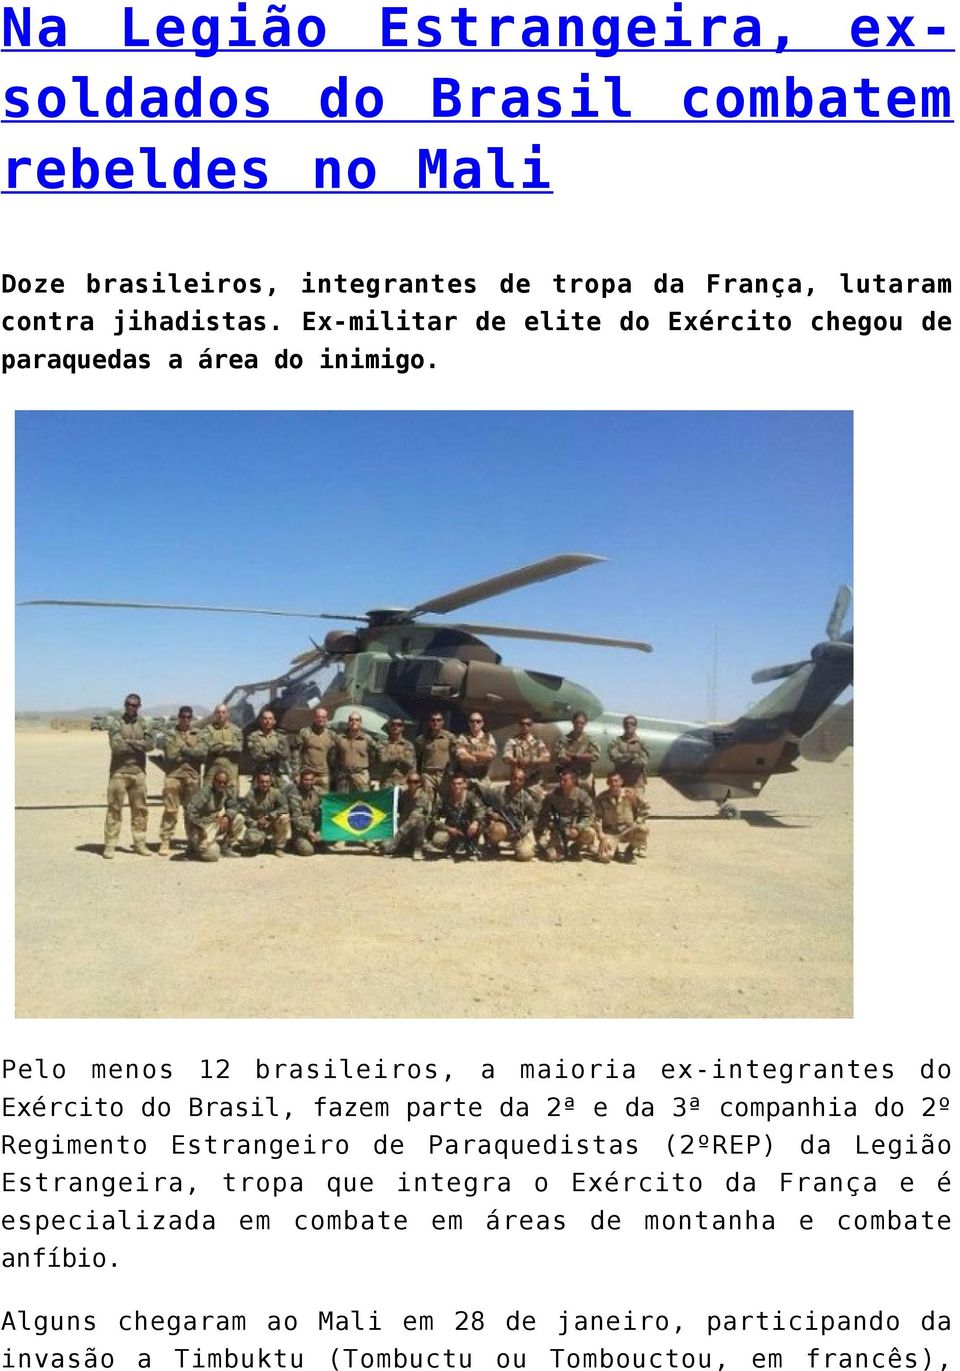 Pelo menos 12 brasileiros, a maioria ex-integrantes do Exército do Brasil, fazem parte da 2ª e da 3ª companhia do 2º Regimento Estrangeiro de Paraquedistas